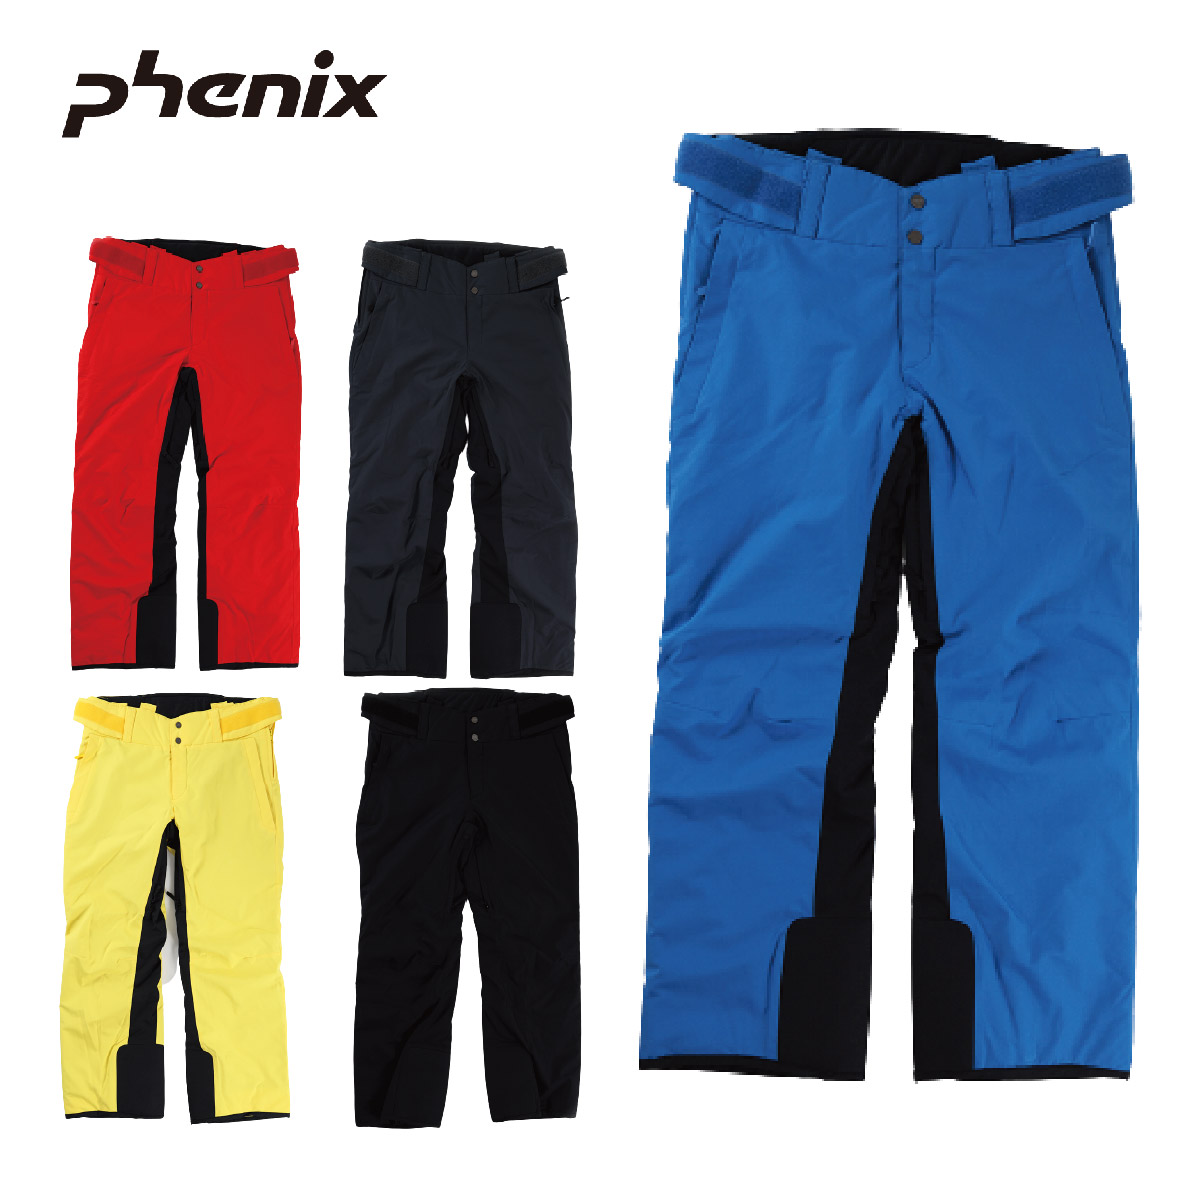 Phenix Mens Hakuba Pant  Red  TeamSkiWear  Ski Racing Shop